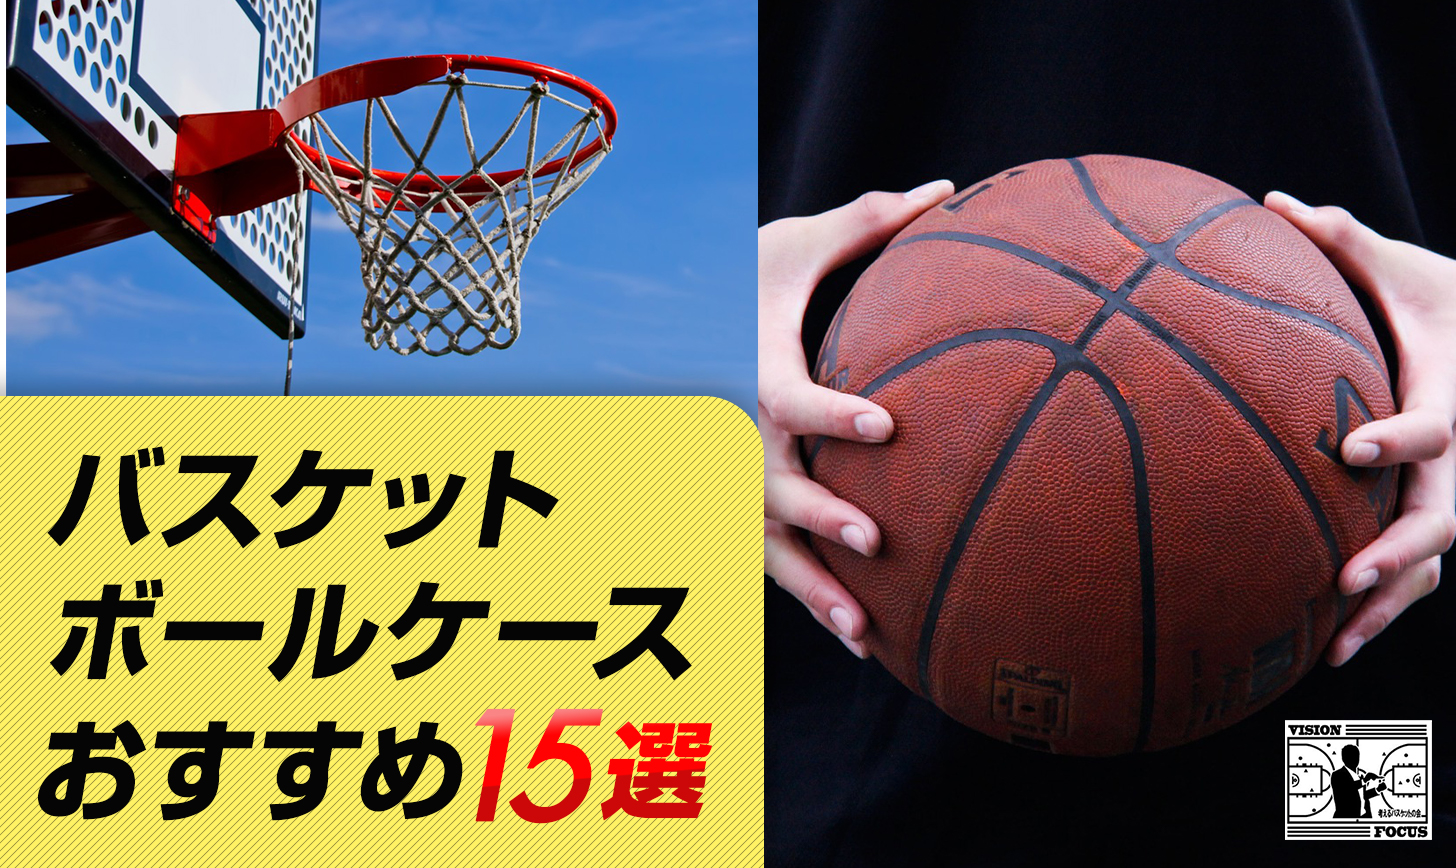 【色: ブラック】RUIXIA1 スポーツバッグ ボールバッグ バスケットボール